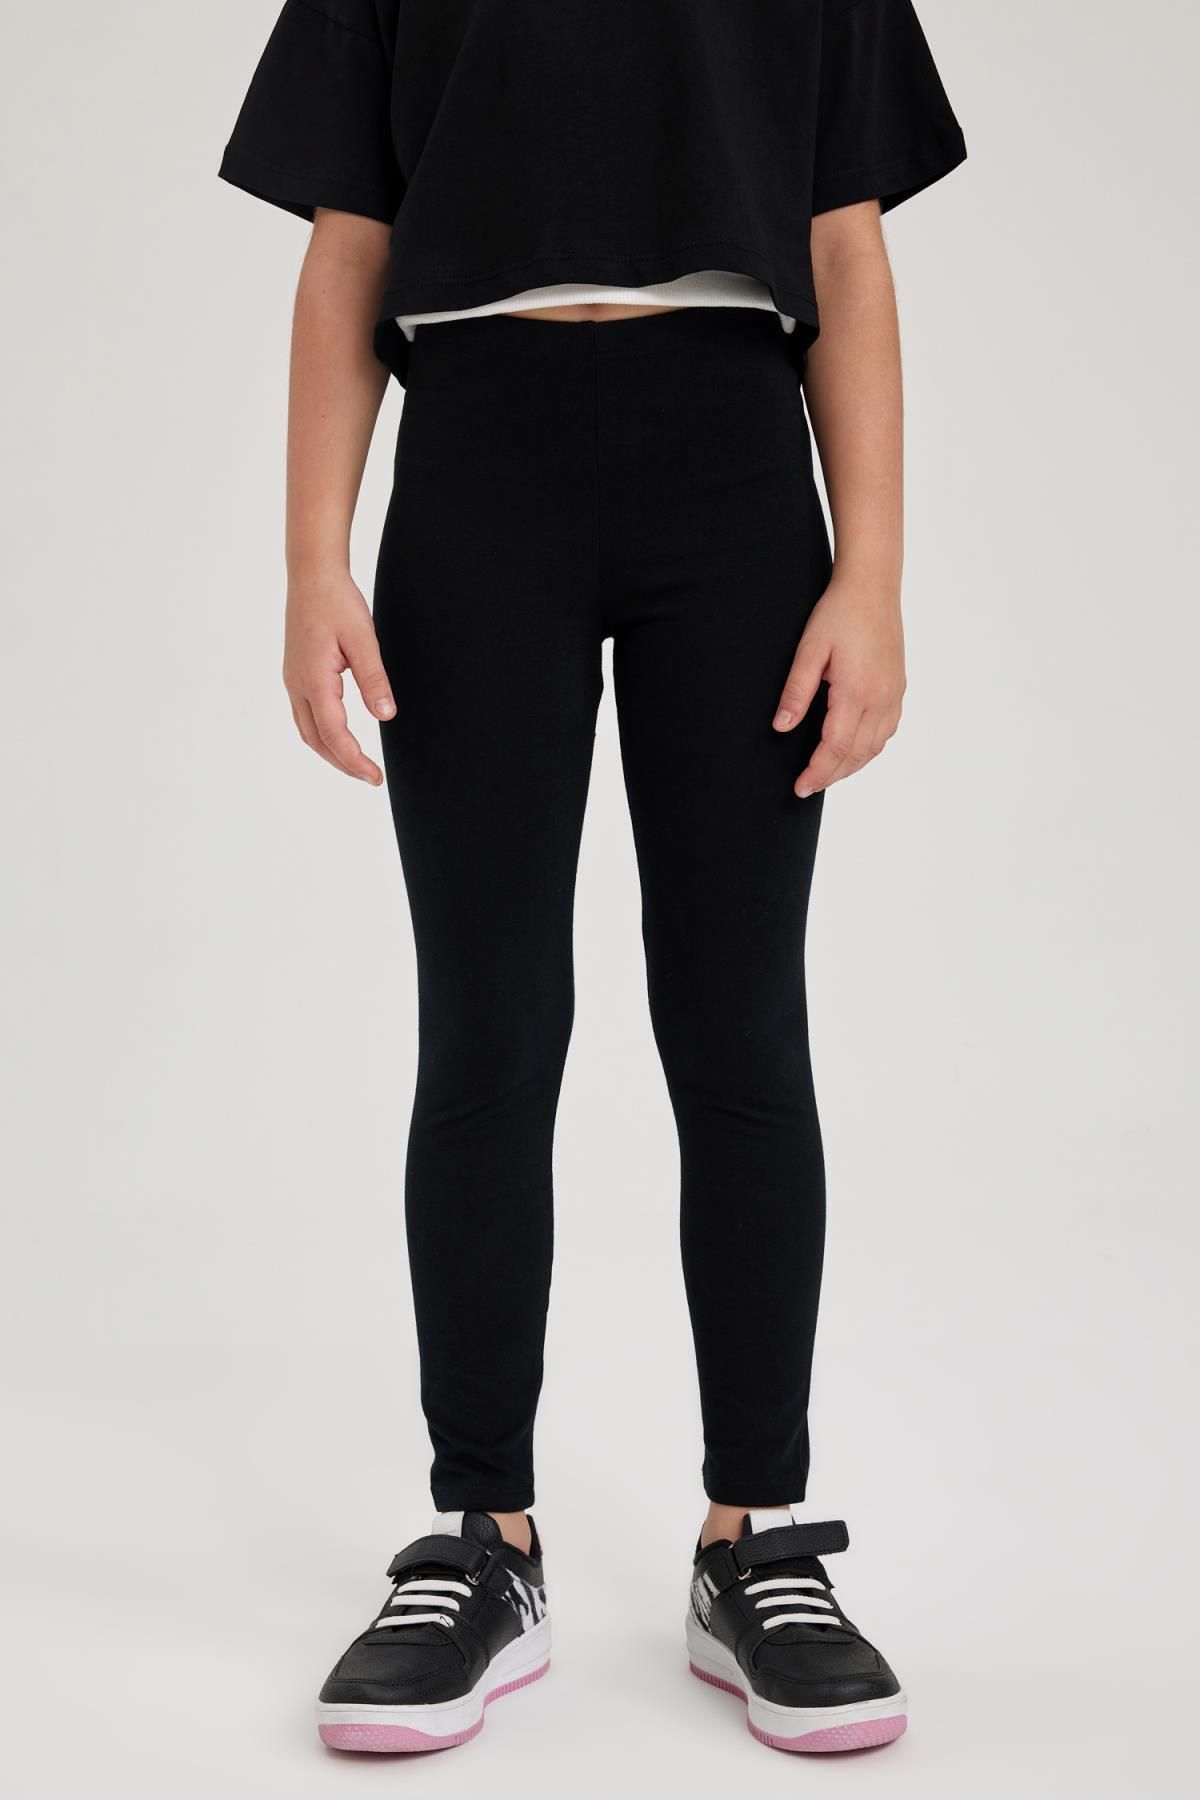 Topshop - high waist leggings in black